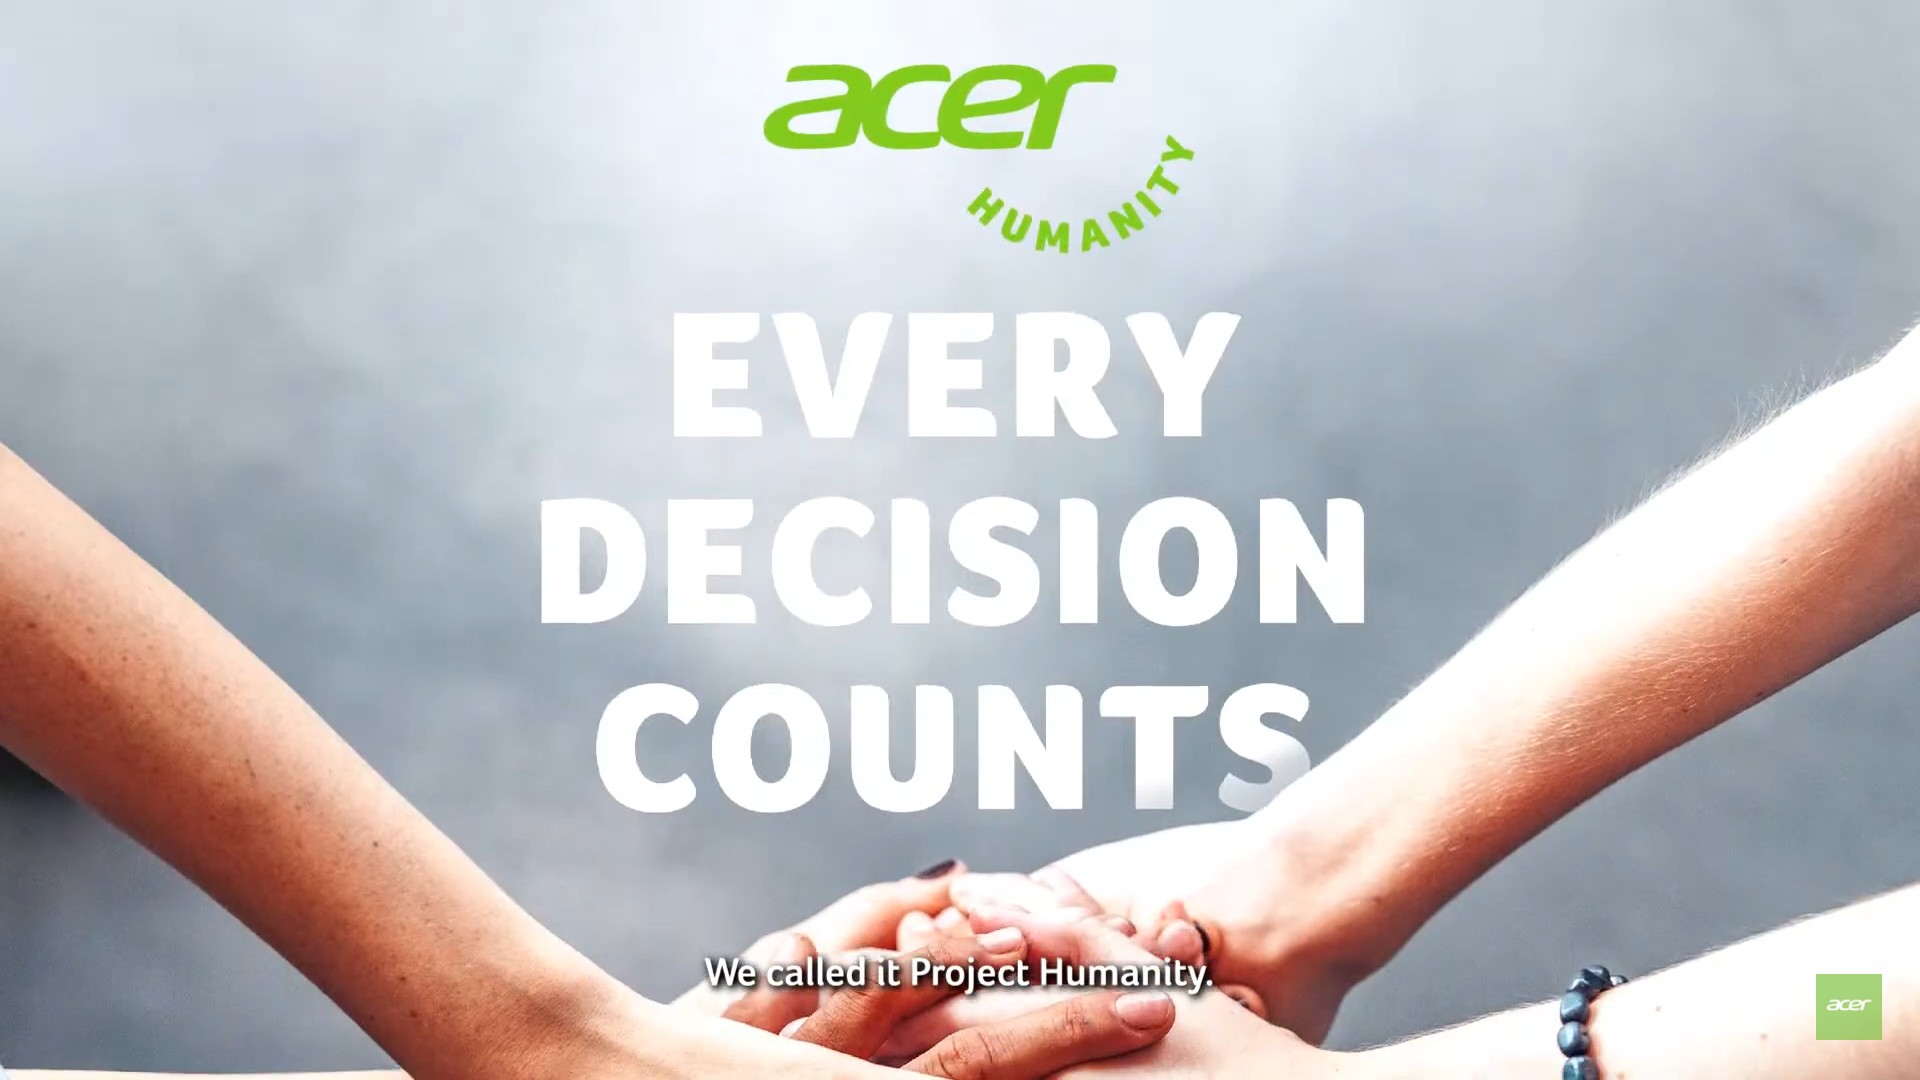 เอเซอร์ประกาศเดินหน้าภารกิจ Earthion ก้าวสำคัญเพื่ออนาคตที่ยั่งยืน ใน Acer Green Day